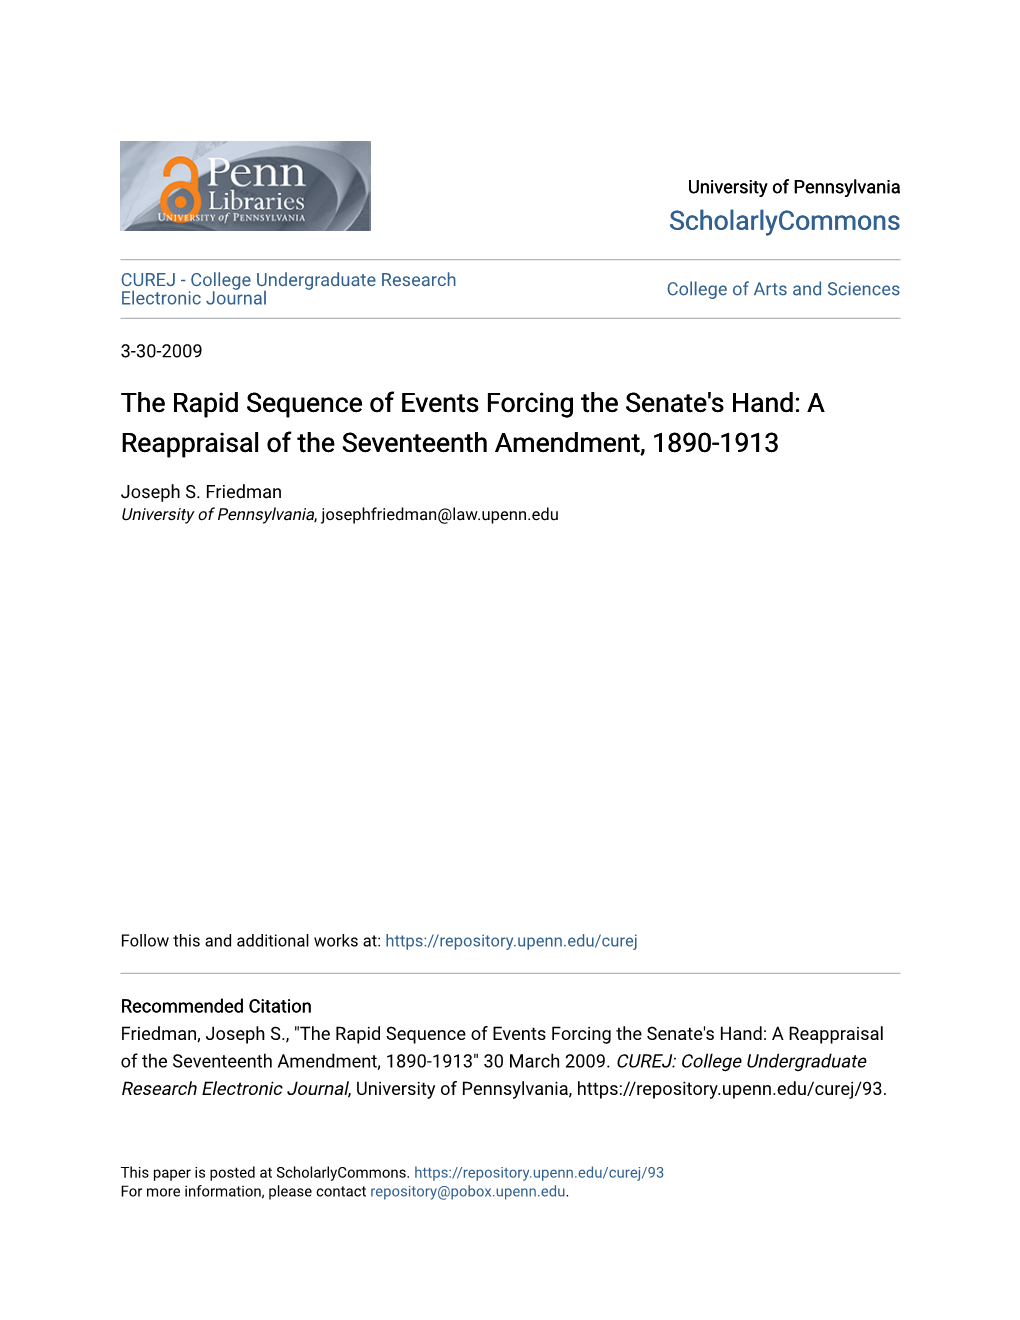 A Reappraisal of the Seventeenth Amendment, 1890-1913